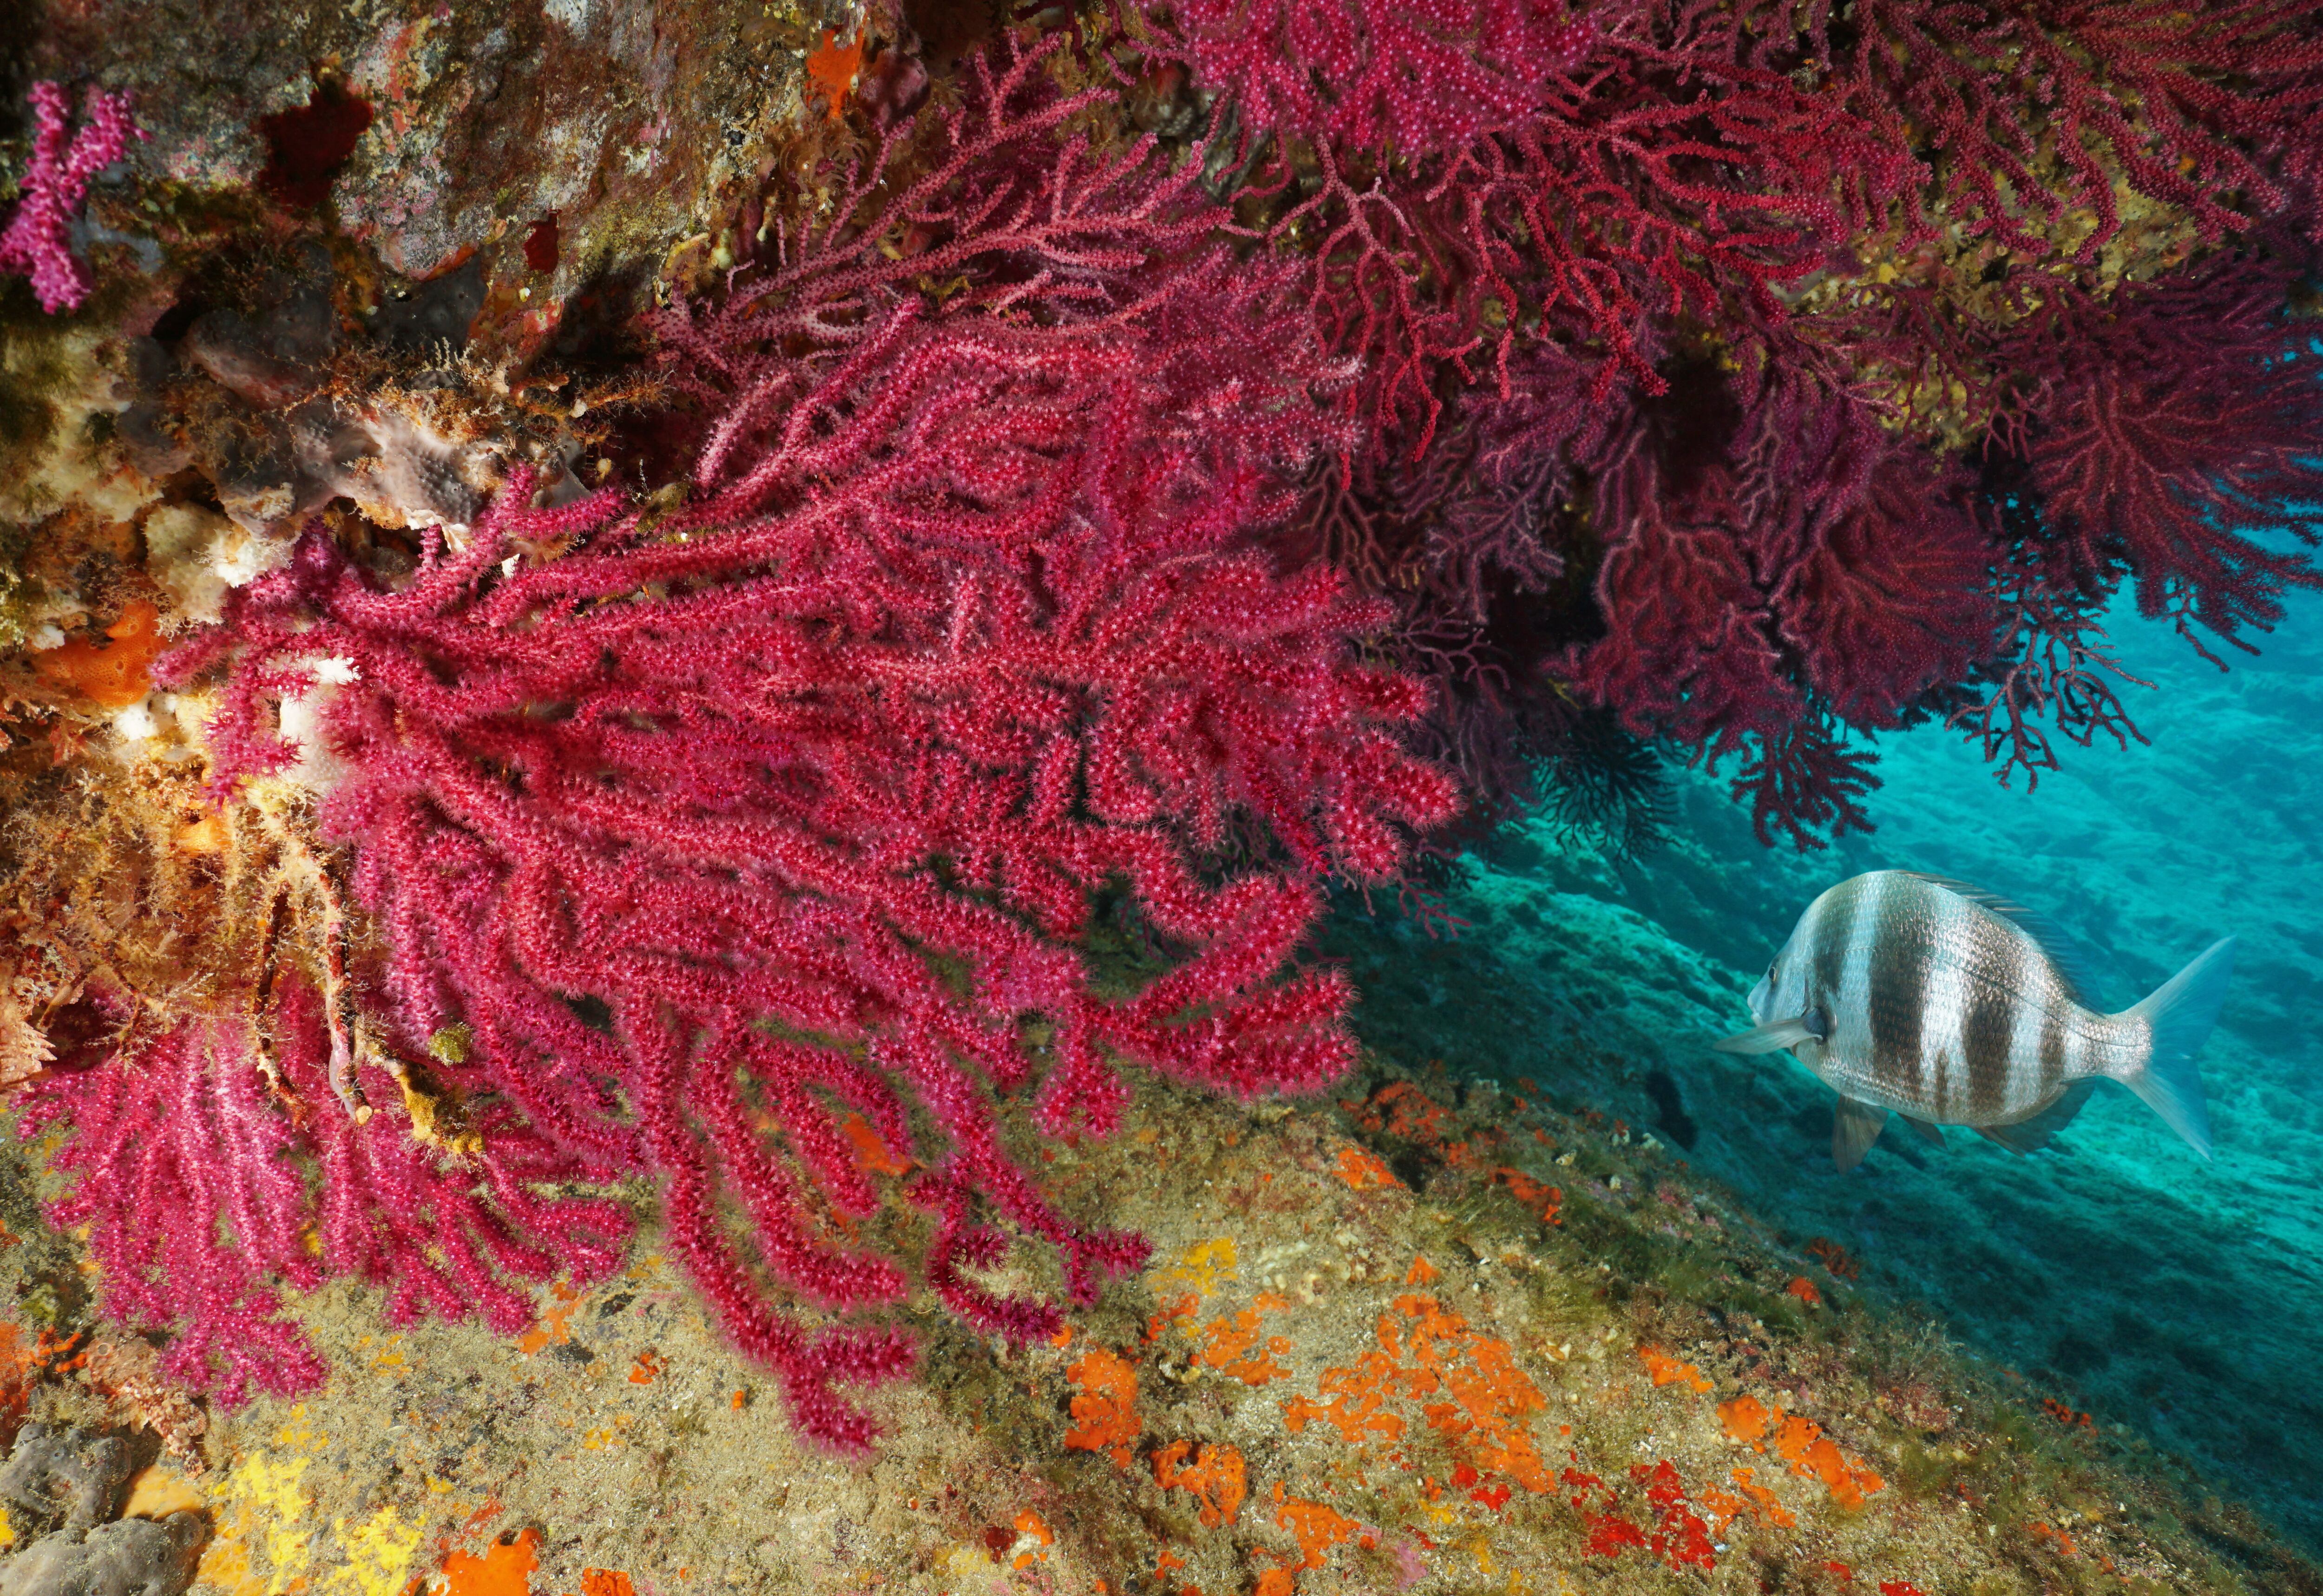 Fondo marino con una gorgonia roja (Paramuricea clavata), una especie frecuente en el Mediterráneo.